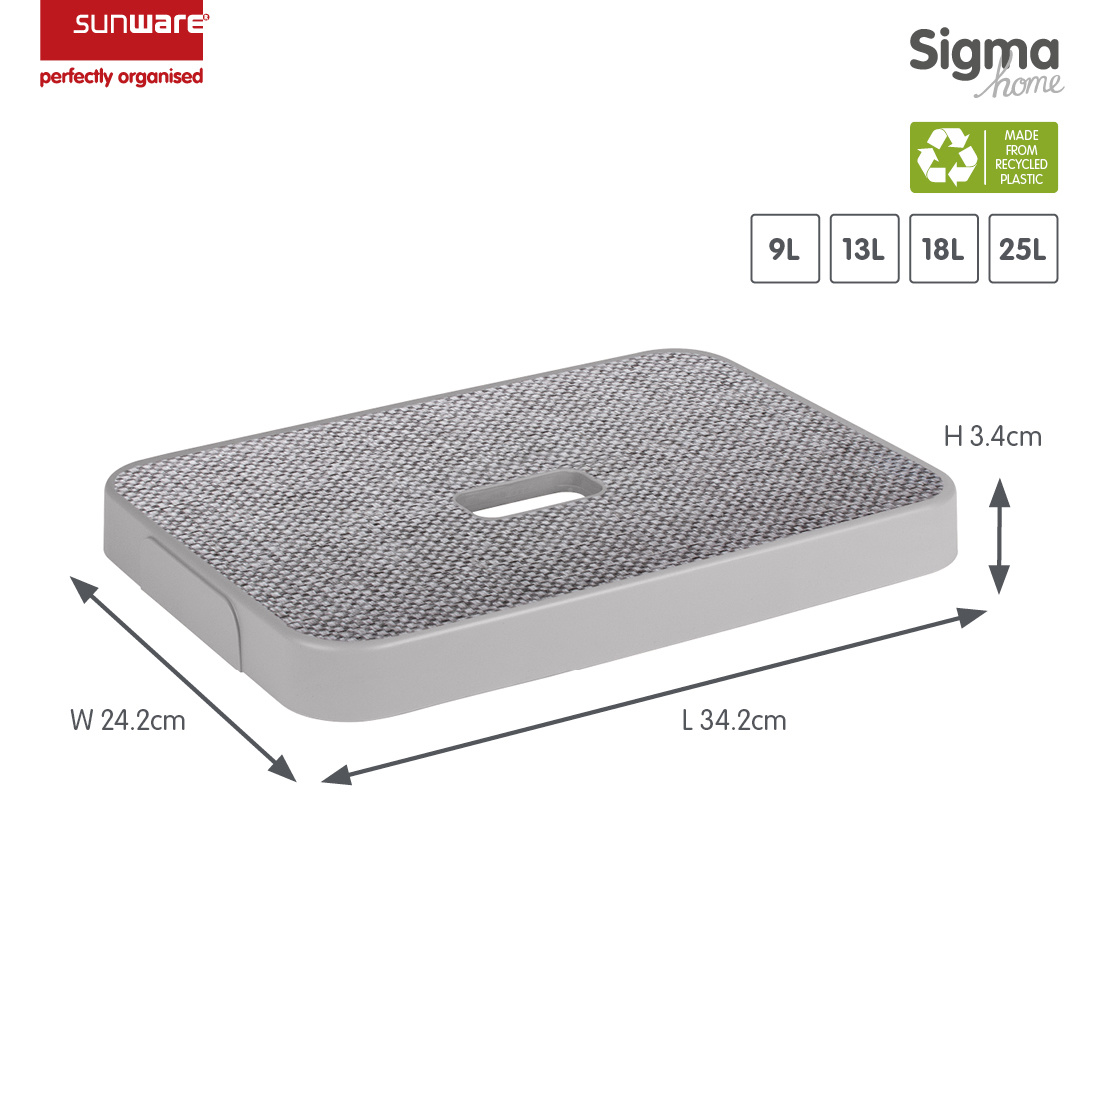 Sigma home couvercle tissu gris - boîte de rangement 9L, 13L, 18L et 25L 